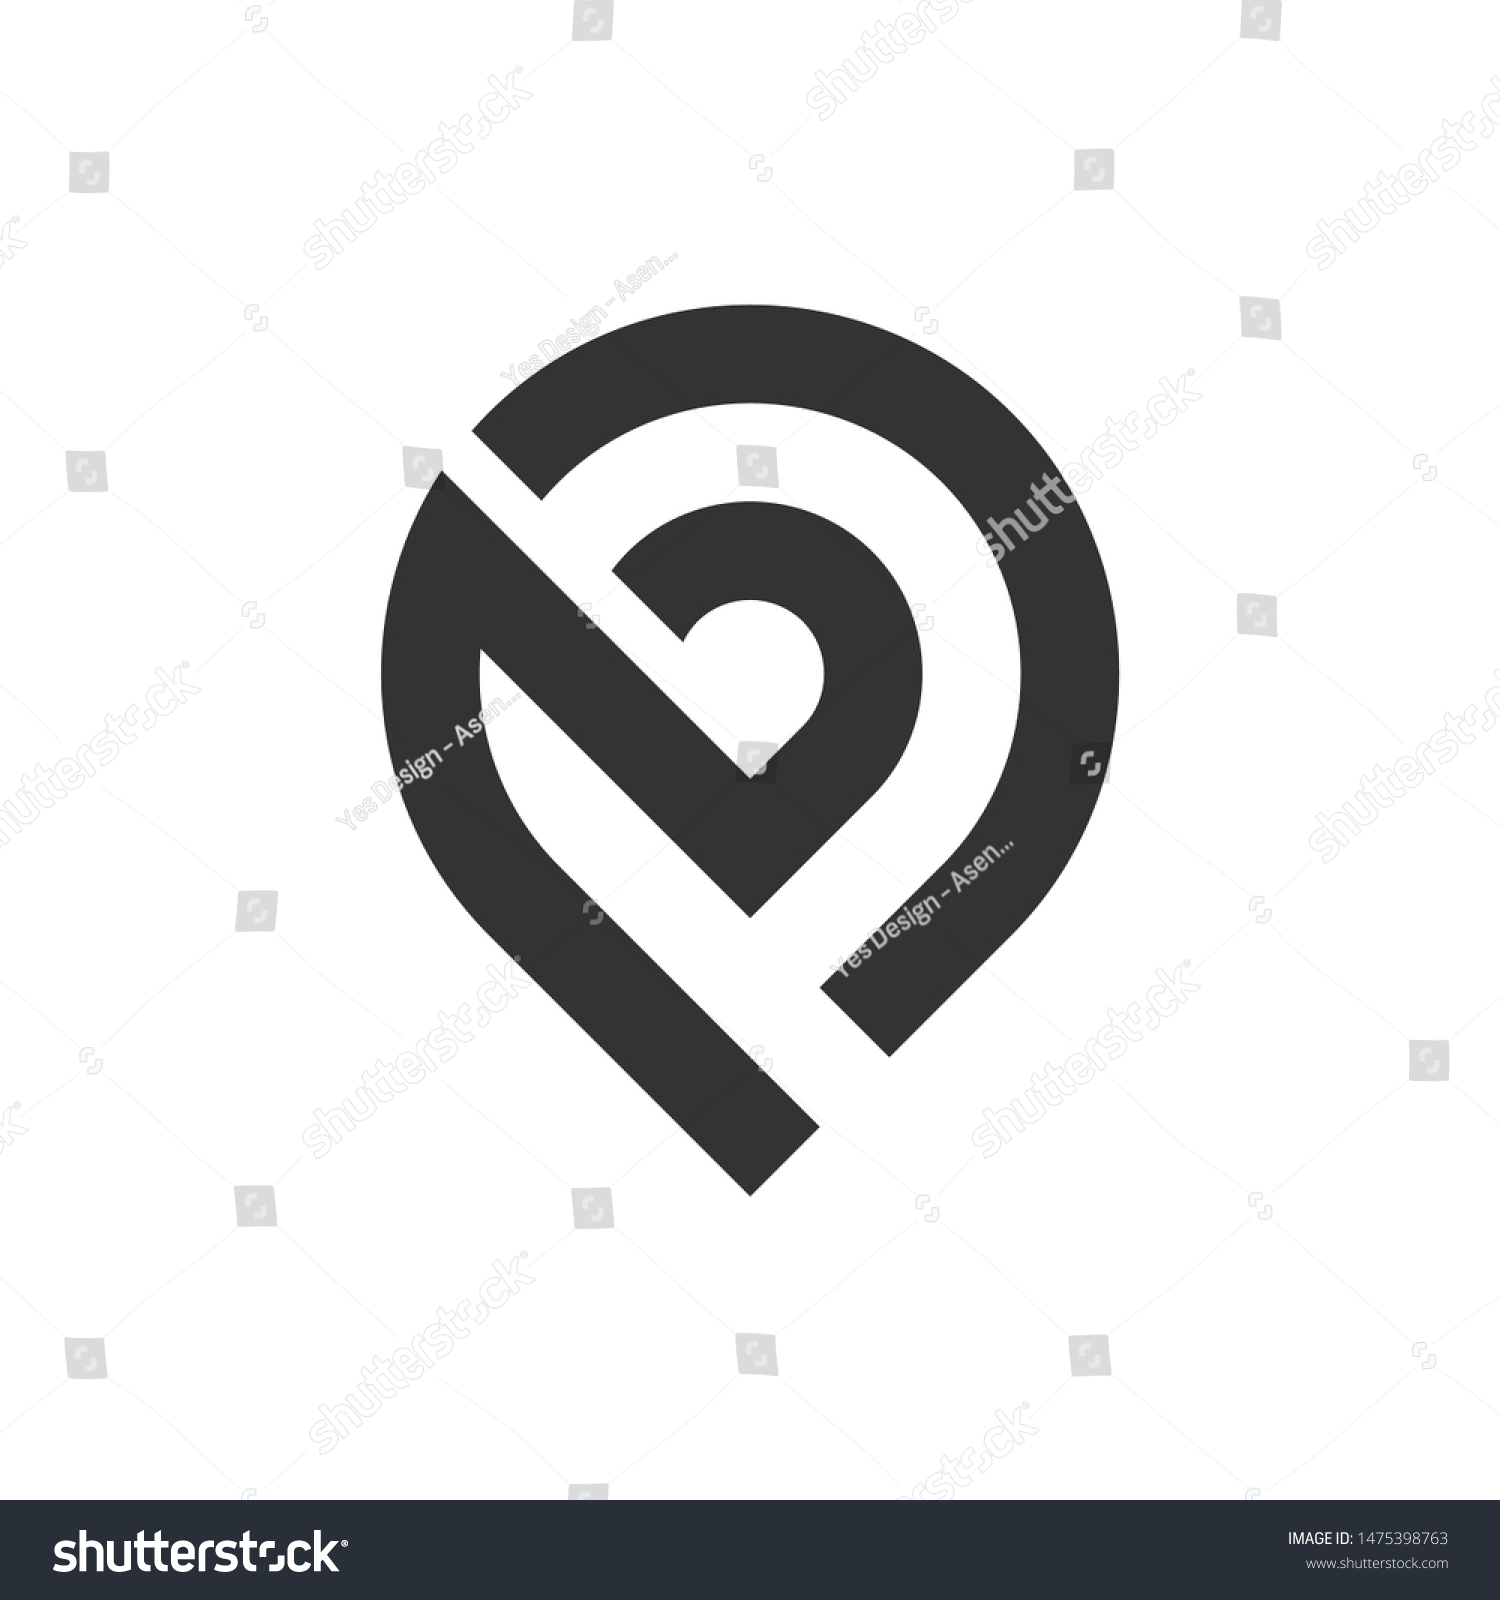 Image Vectorielle De Stock De Abstract Letter B Bp Logo Concept